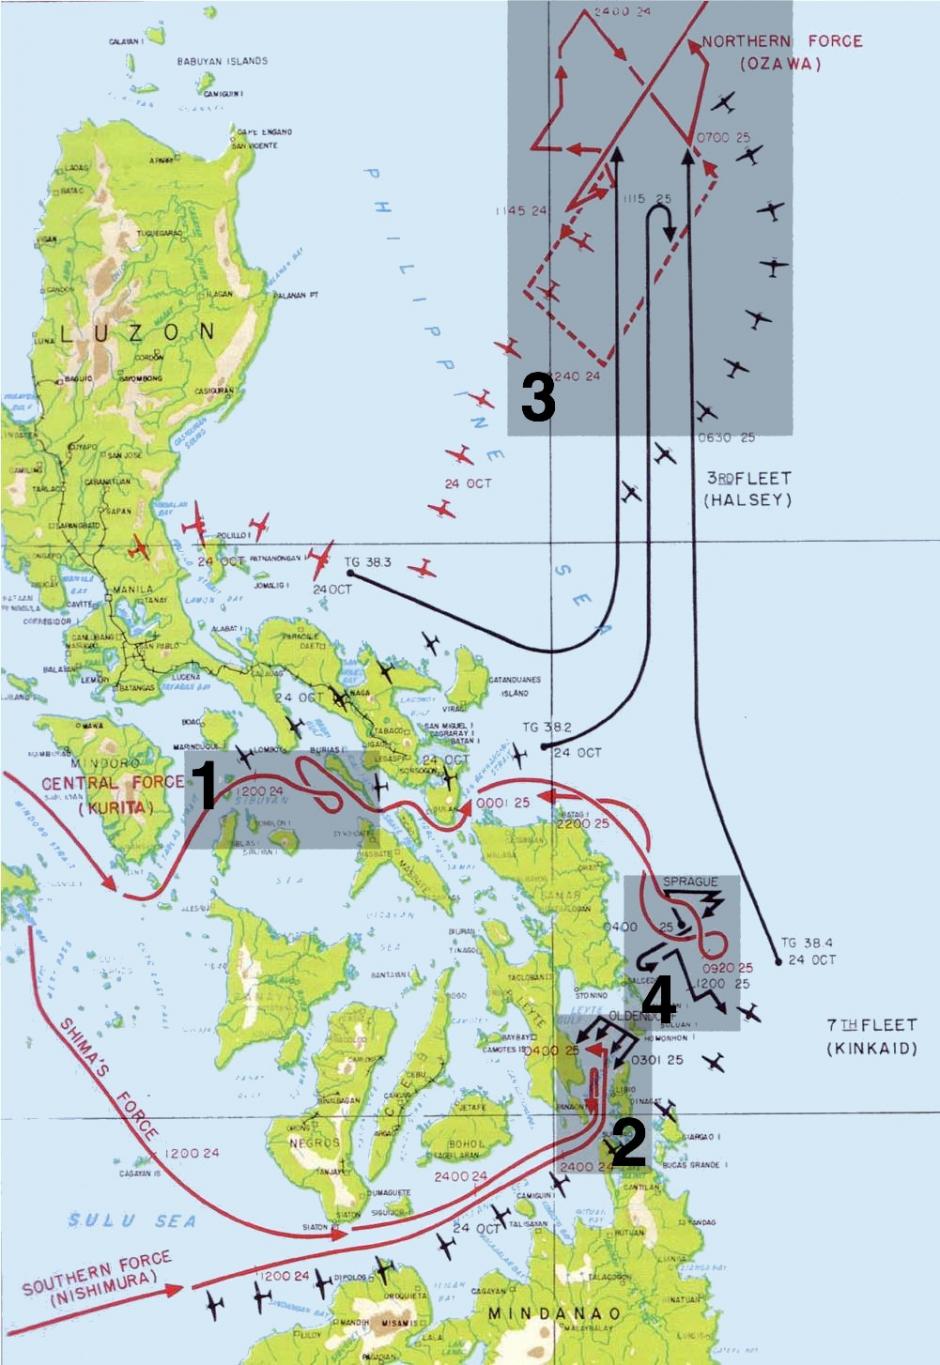 Mapa de los cuatro encuentros de la Batalla del golfo de Leyte. 1: el paso de Palawan, 2: batalla del estrecho de Surigao, 3: batalla del cabo Engaño y 4: batalla de Samar. En rojo, los movimientos de la flota japonesa y sus principales ataques aéreos